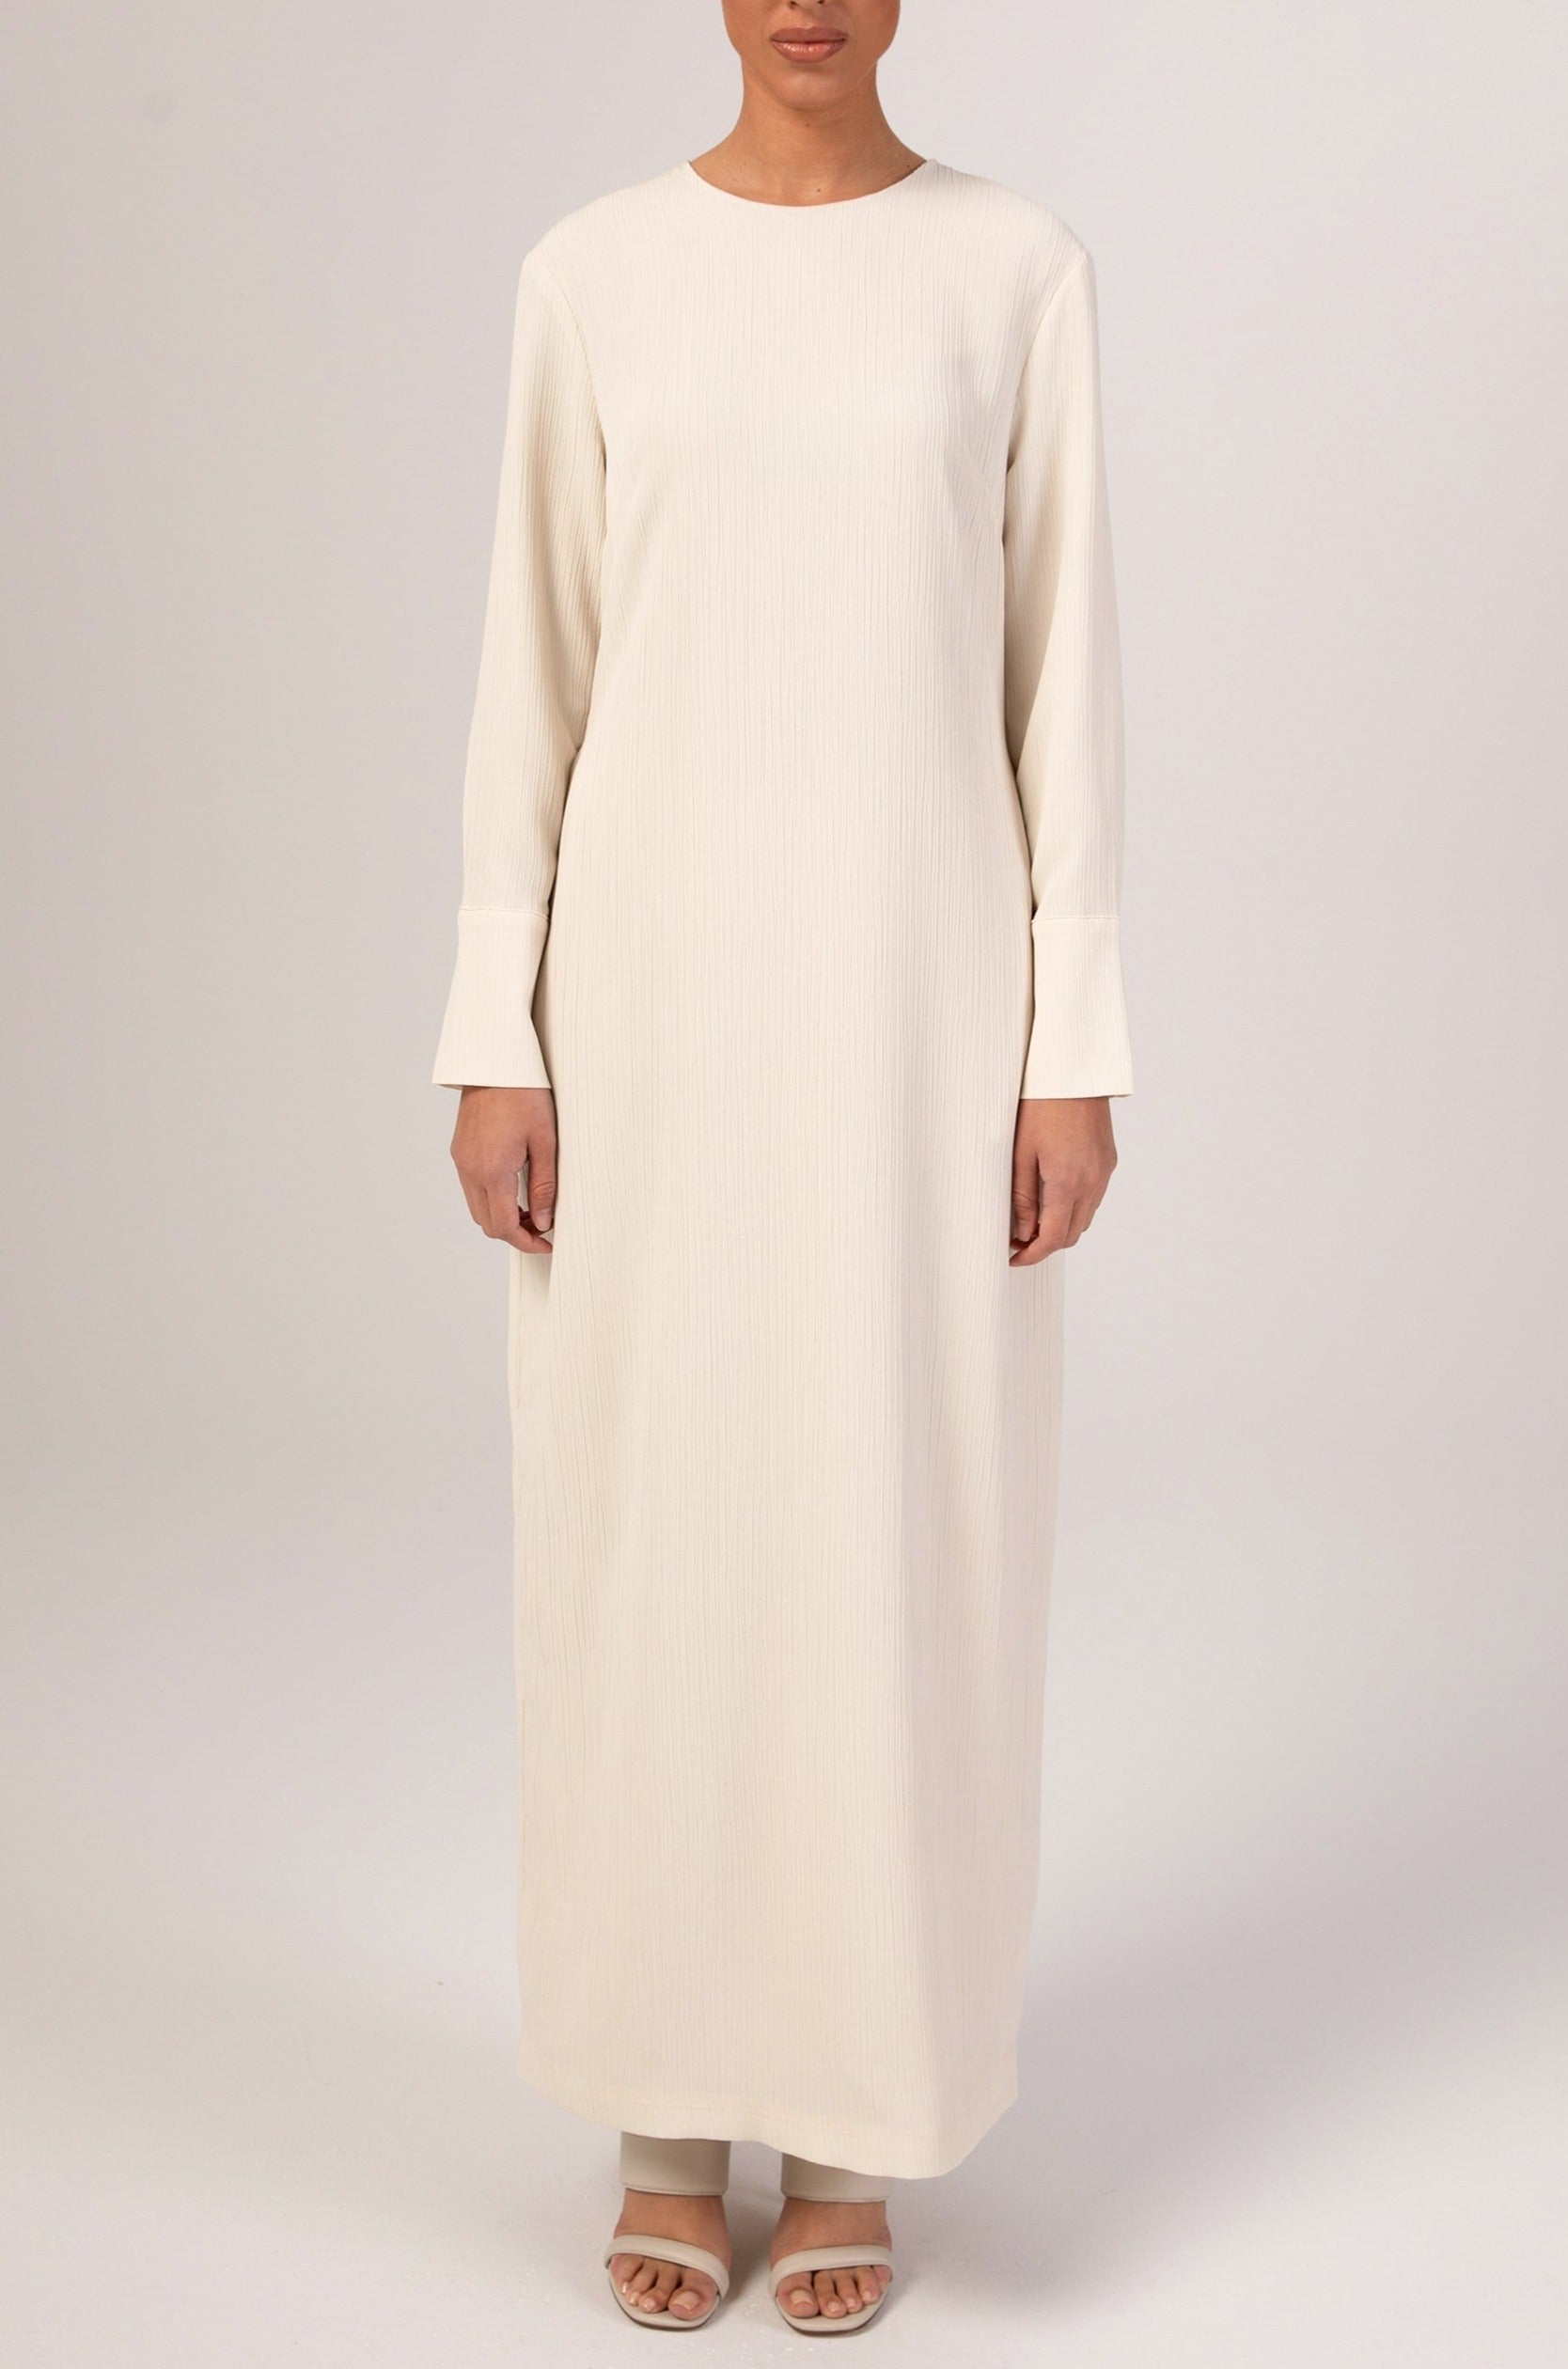 Sajda Textured Maxi Dress - Off White Veiled 